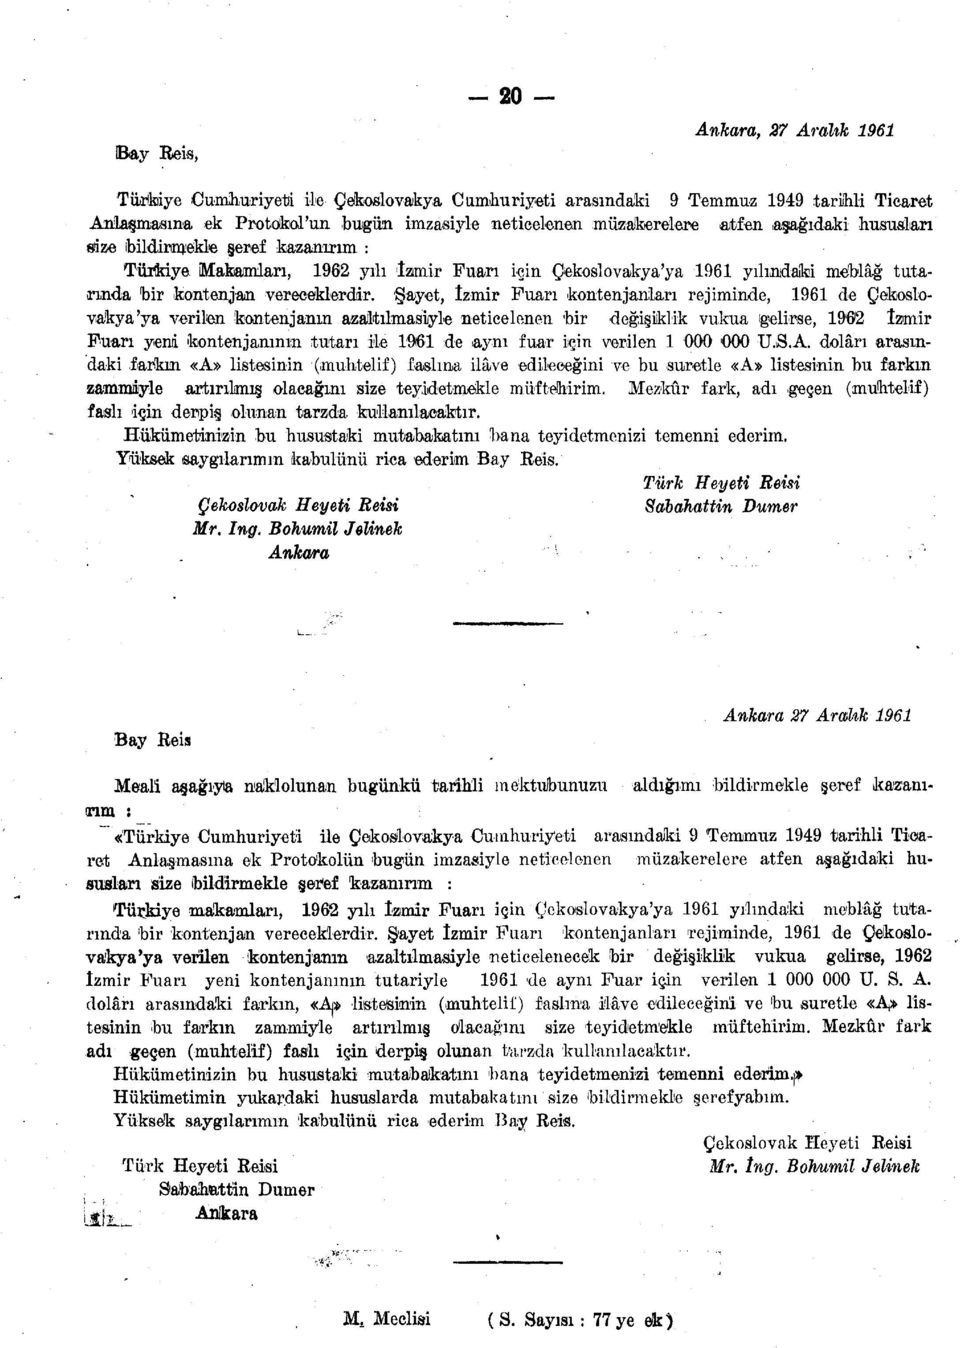 Şayet, İzmir Fuarı kontenjanları rejiminde, 1961 de Çekoslovakya'ya verilen kontenjanın azaltılmasiyle neticelenen bir değişiklik vukua ıgelirse, 1902 İzmir Fuarı yeni kontenjanının tutarı ile 1961